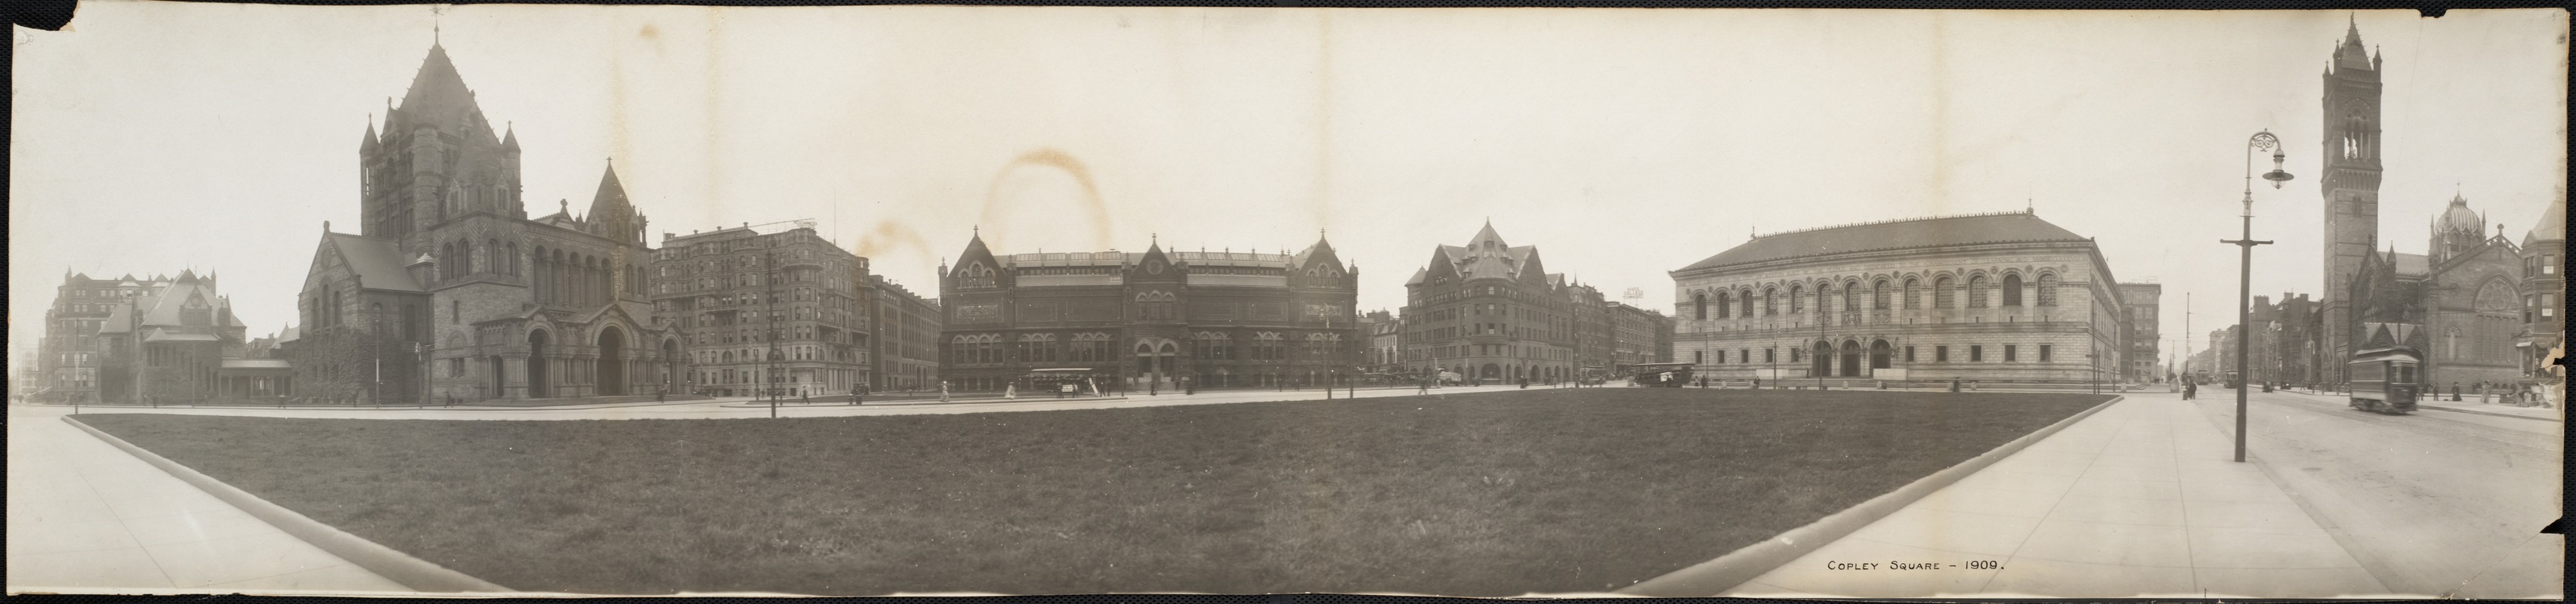 Copley Square - 1909